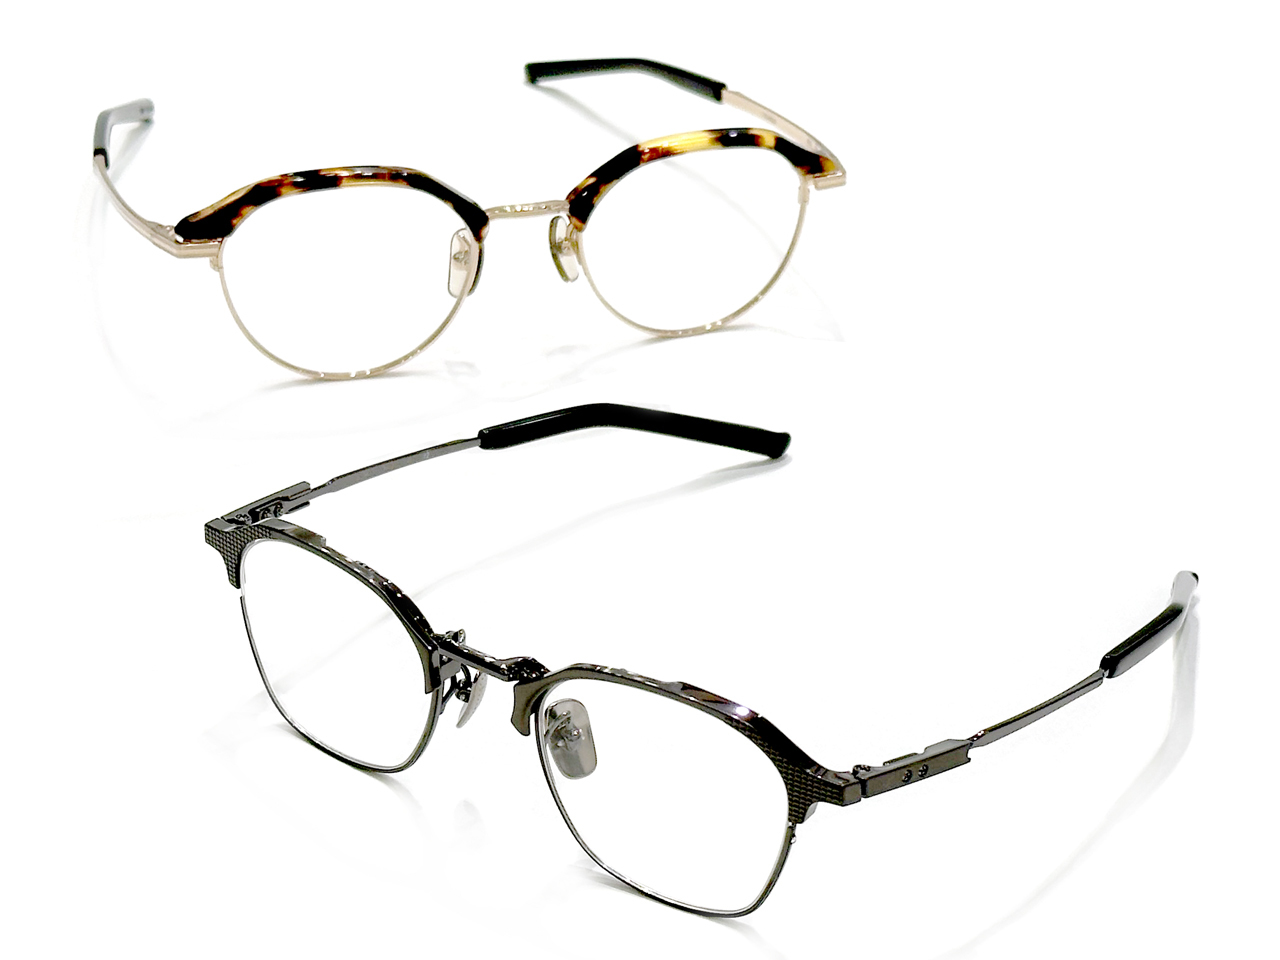 999.9 フォーナインズ新作眼鏡フレーム S-04TH M-67 発売 茨城県つくば市研究学園 メガネ店